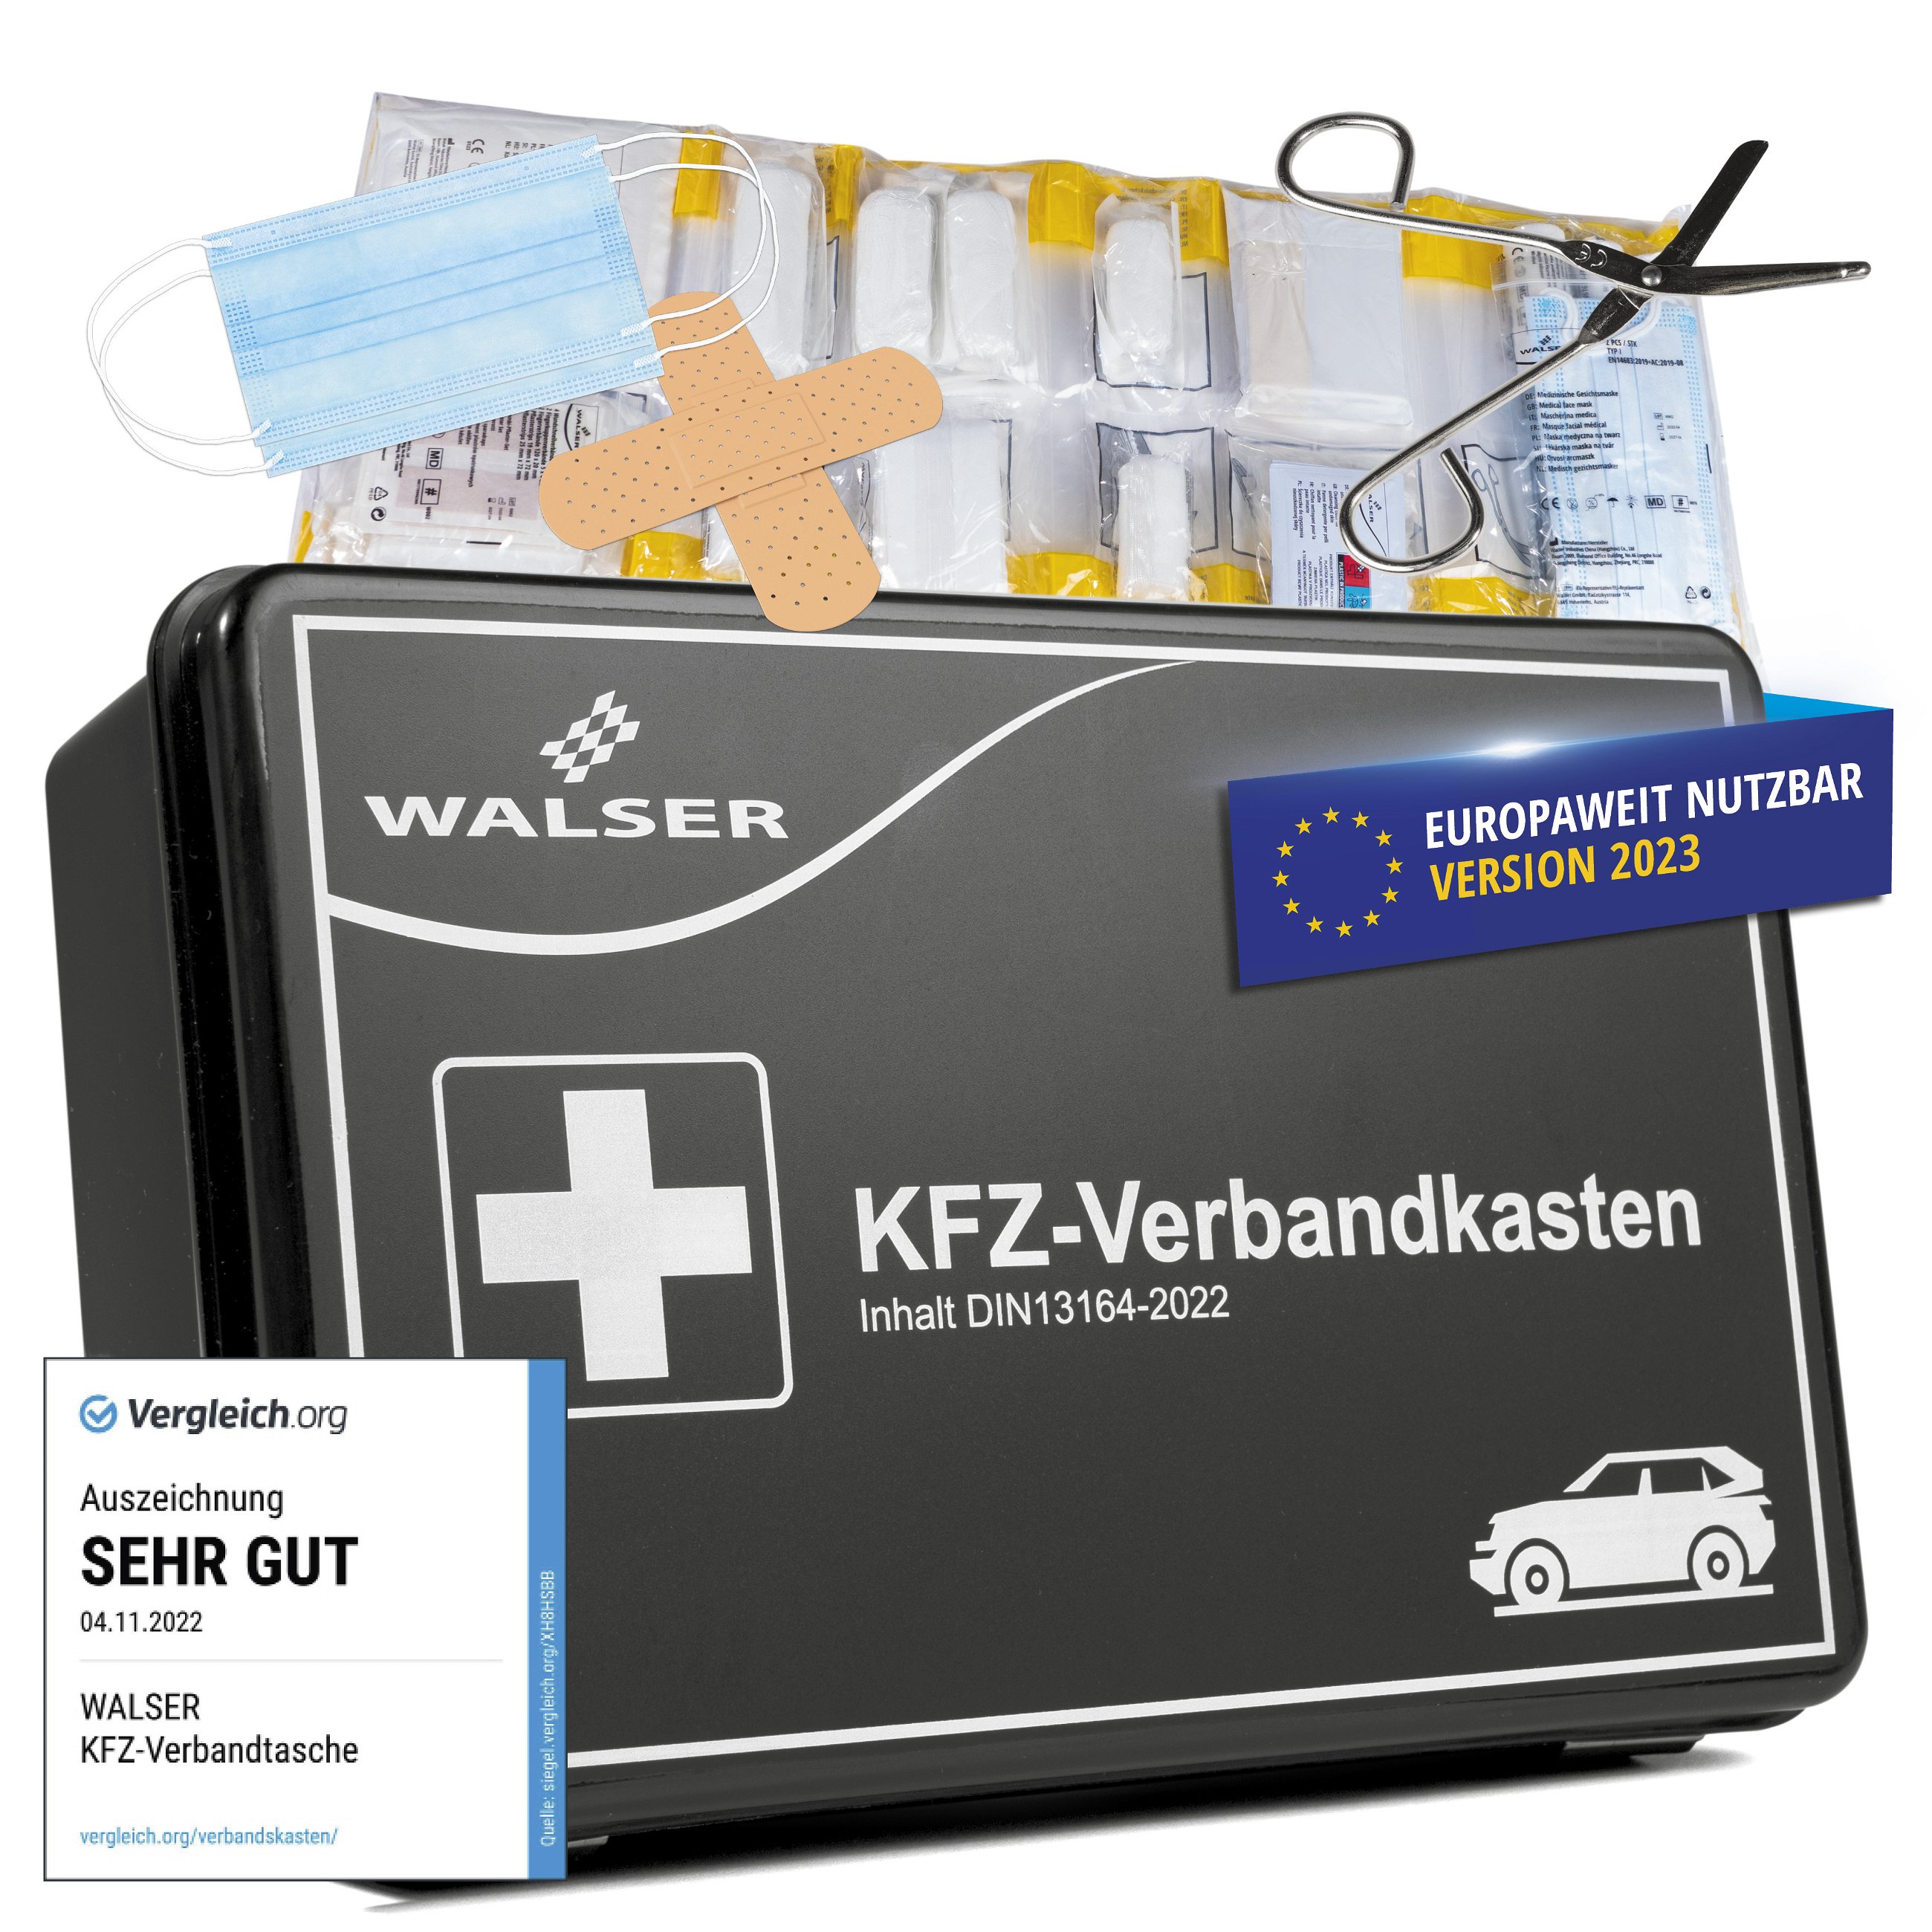 Holthaus Medical Mini KFZ Auto Verbandtasche DIN 13164 Verbandskasten